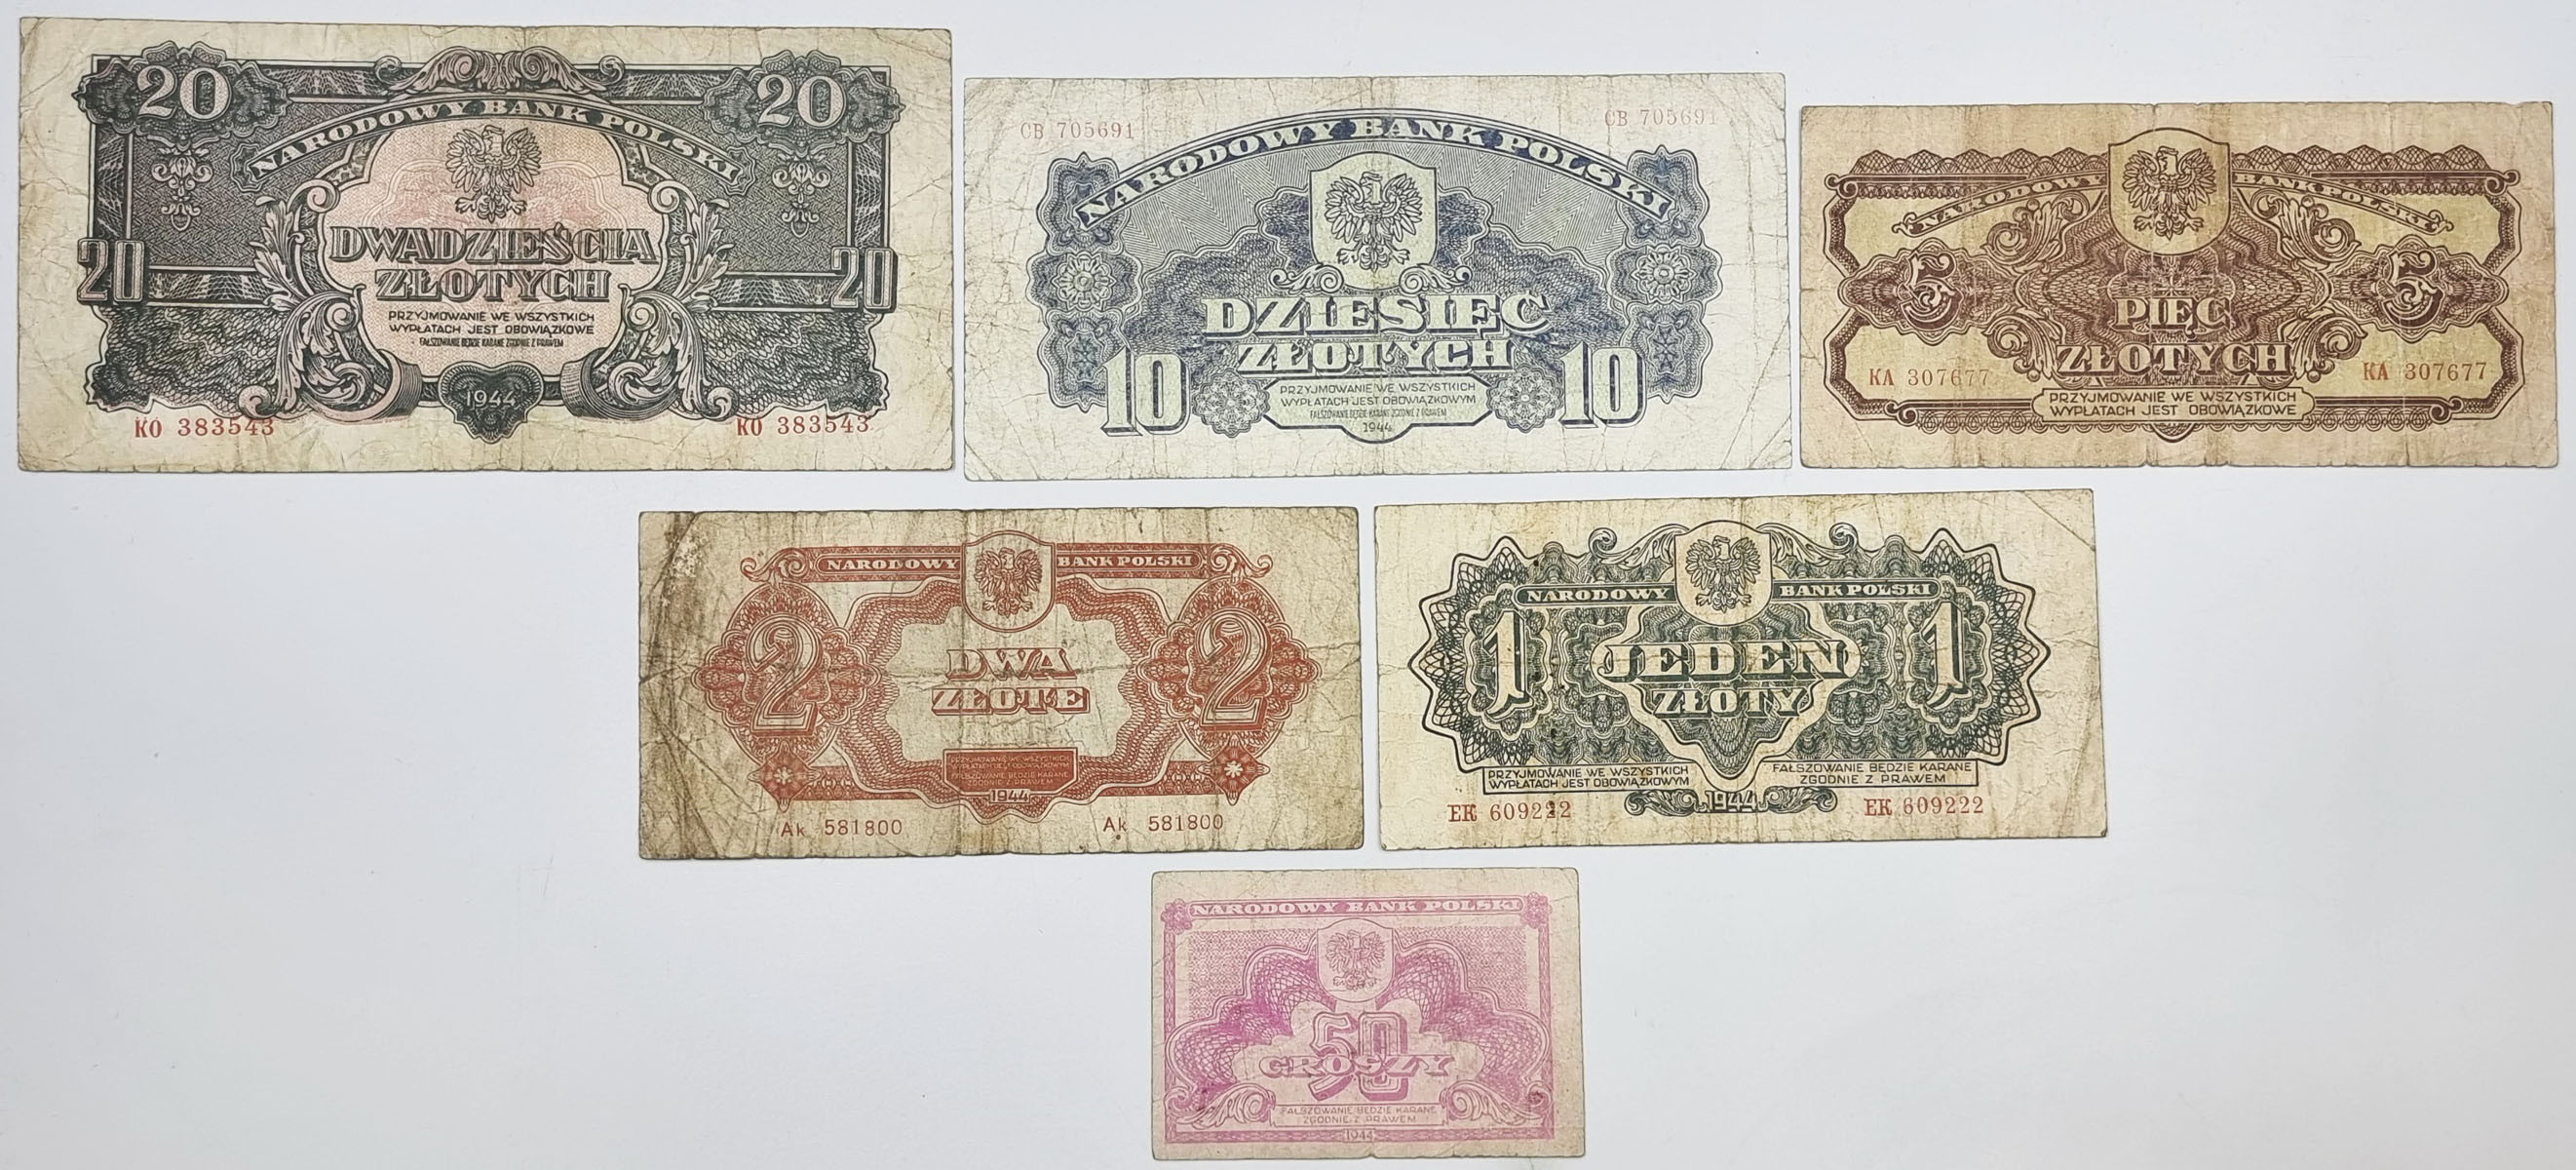 50 groszy do 20 złotych 1946, zestaw 6 banknotów